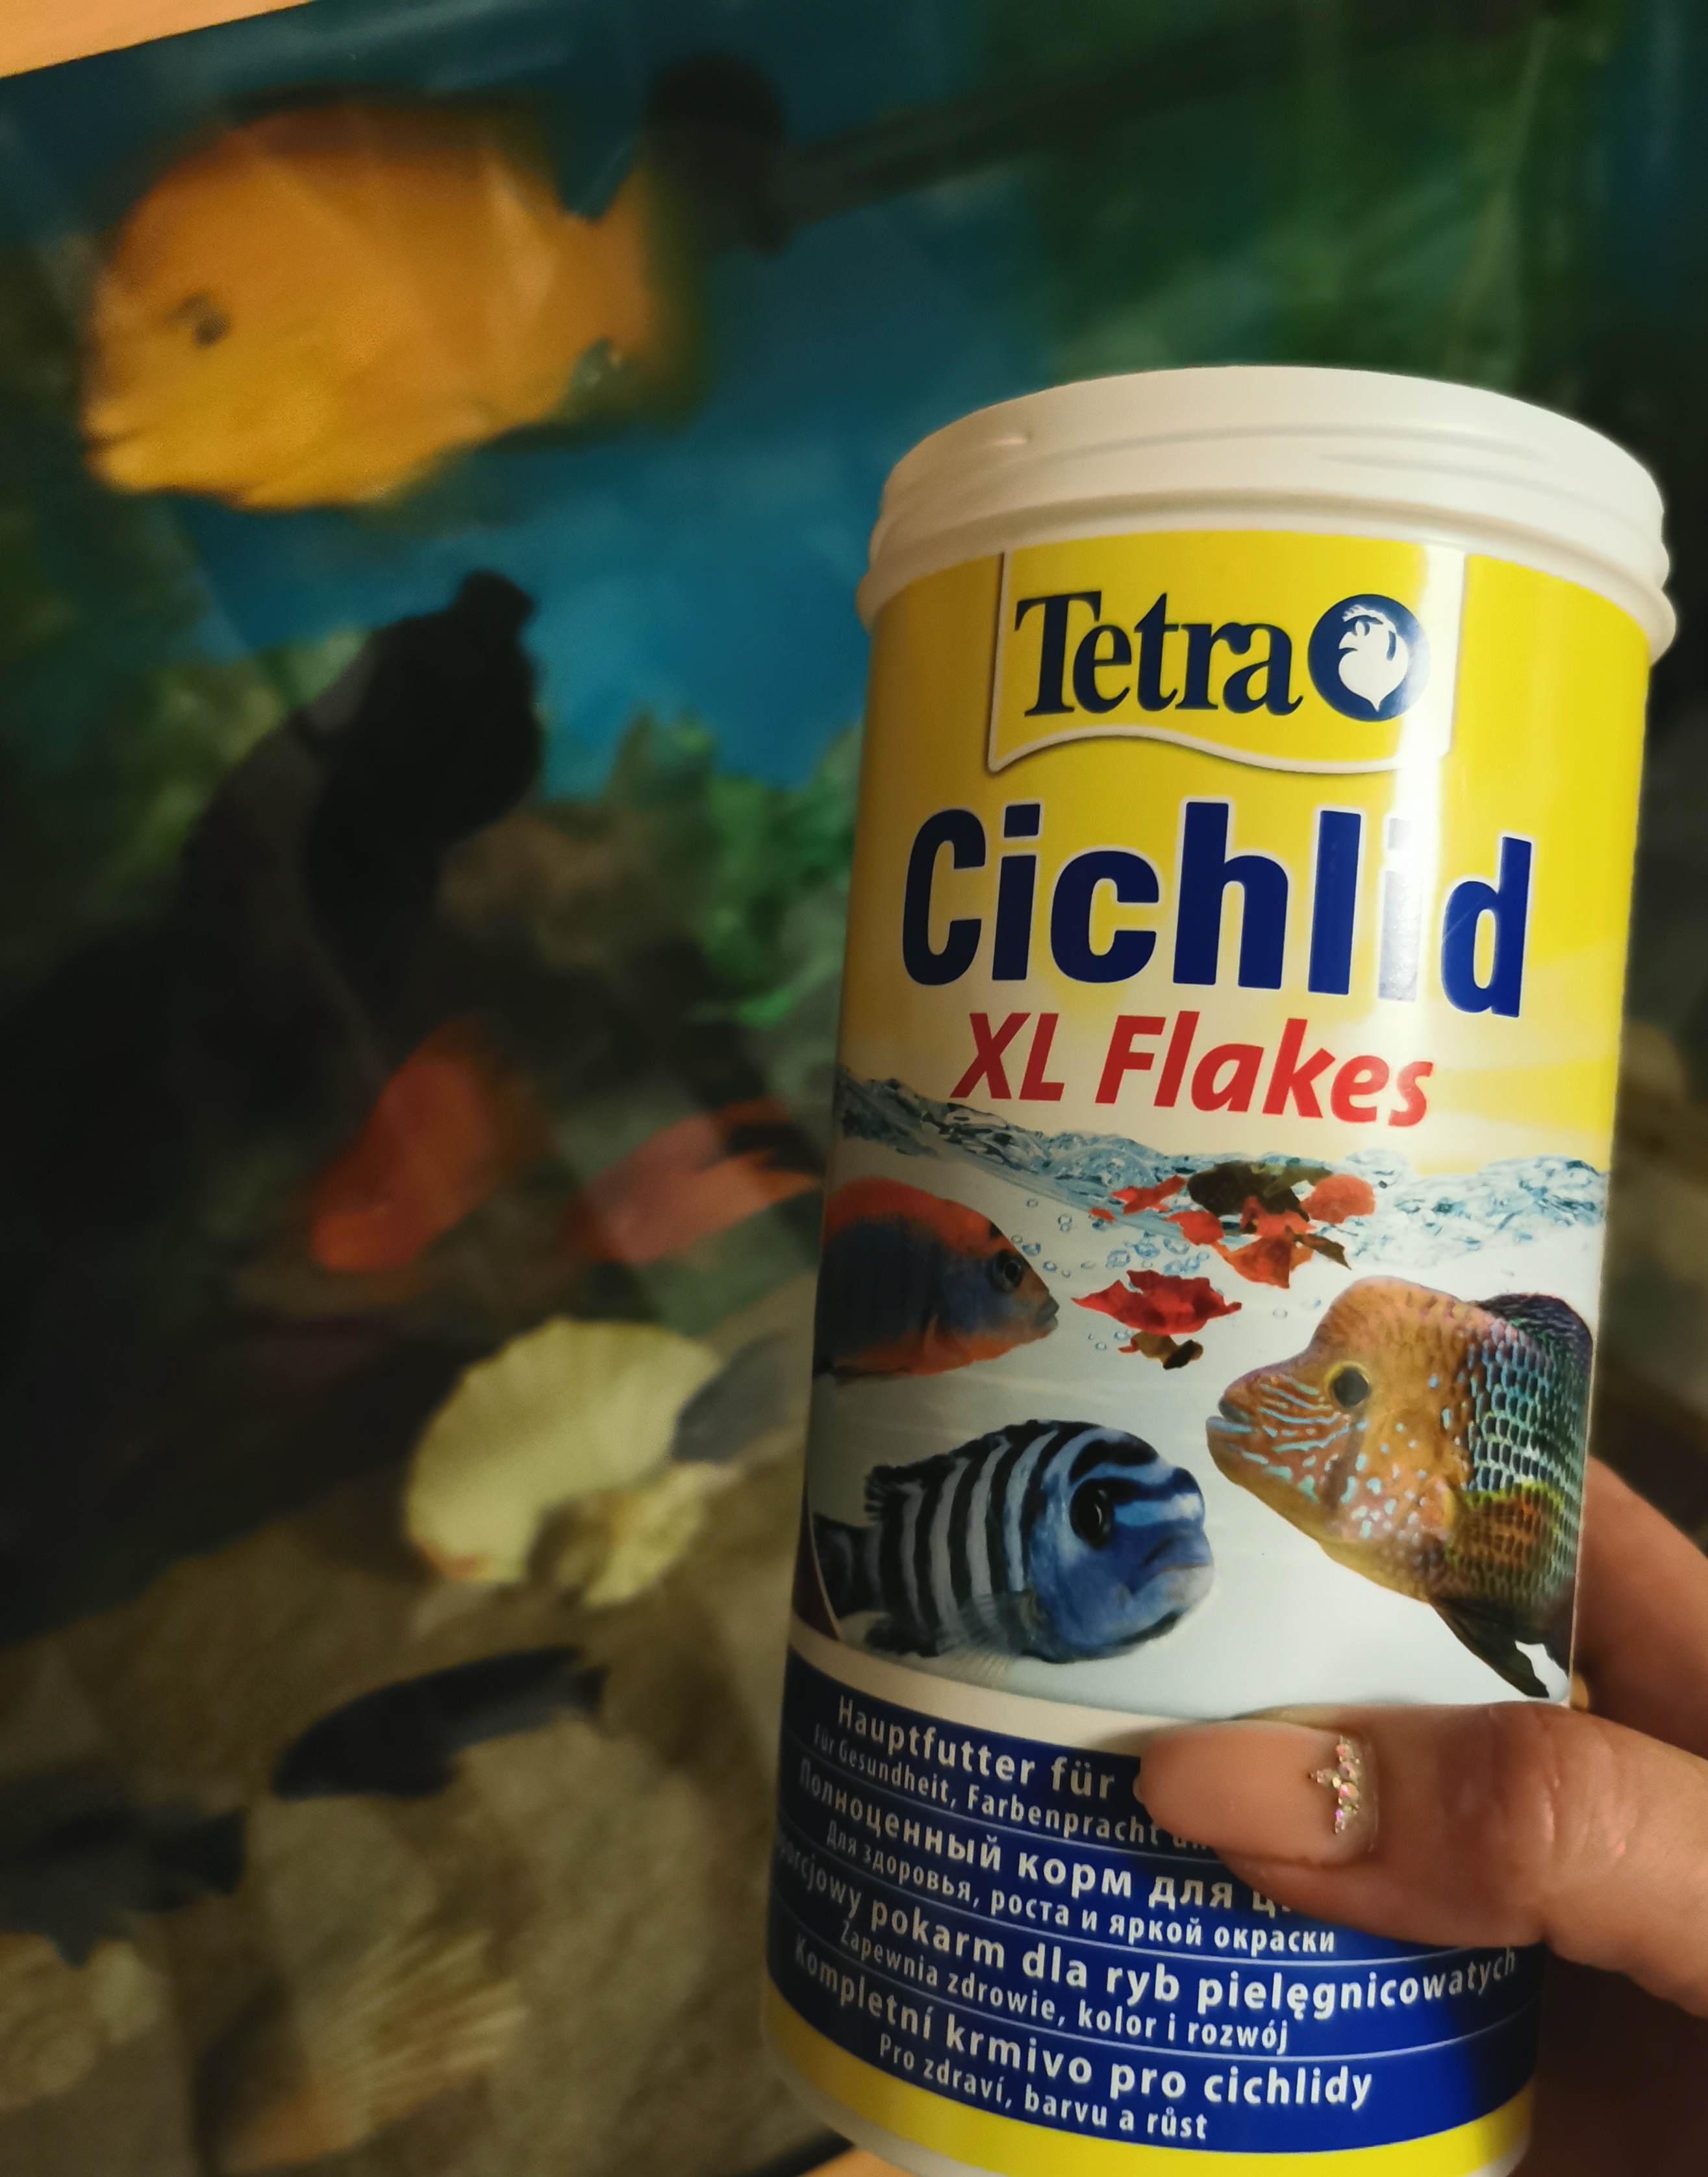 Tetra Cichlid XL Flakes: Tetra